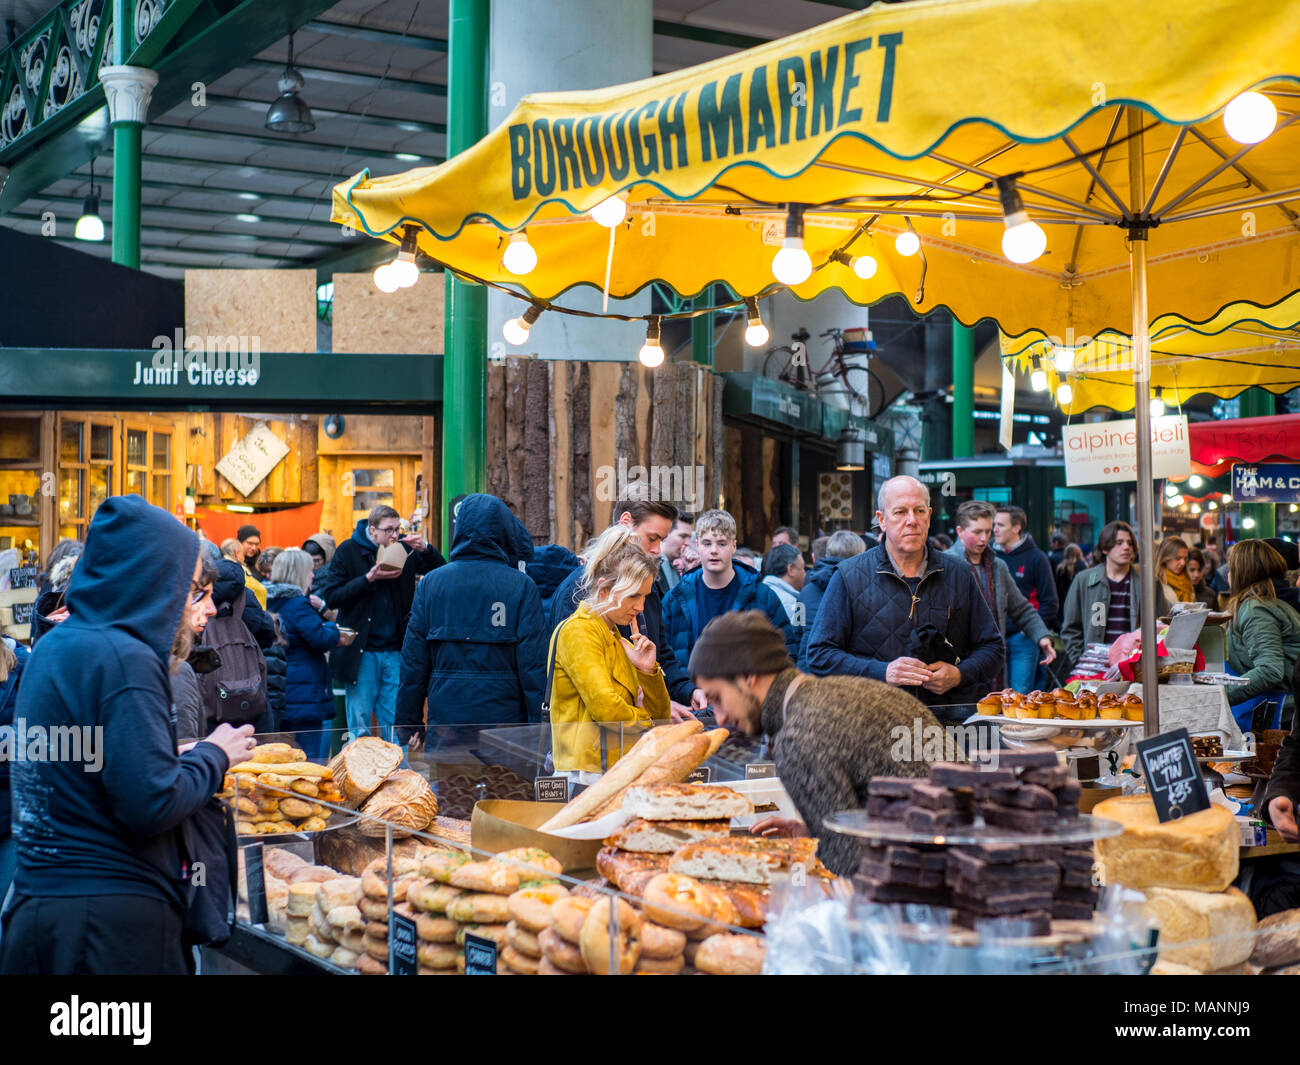 Borough Market Vendita di specialità alimentari nel centro di Londra, uno di Londra più grandi mercati alimentari, situato all'estremità meridionale del London Bridge. Foto Stock